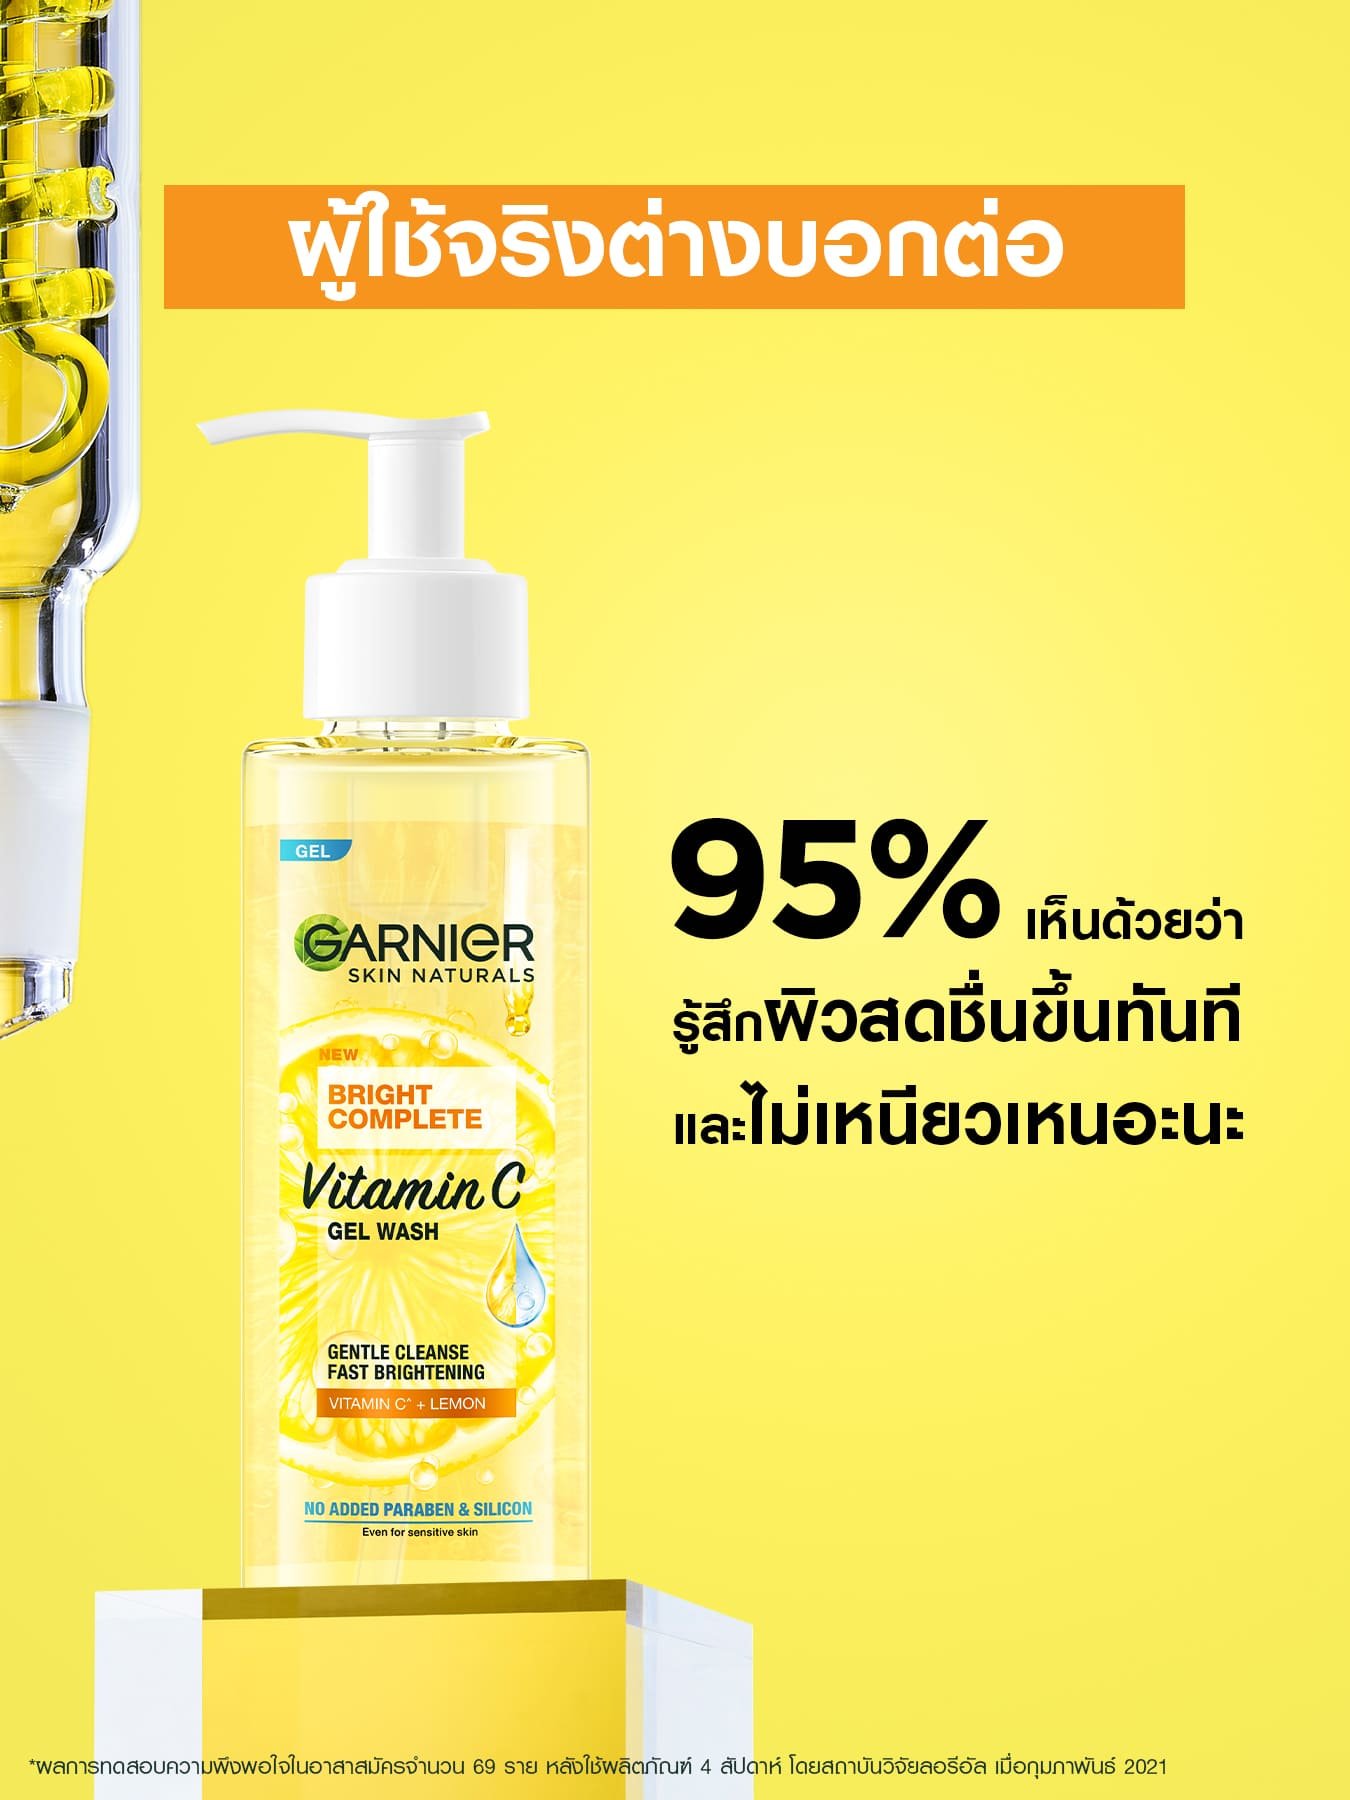 Garnier Bright Complete Vitamin C Gel Wash